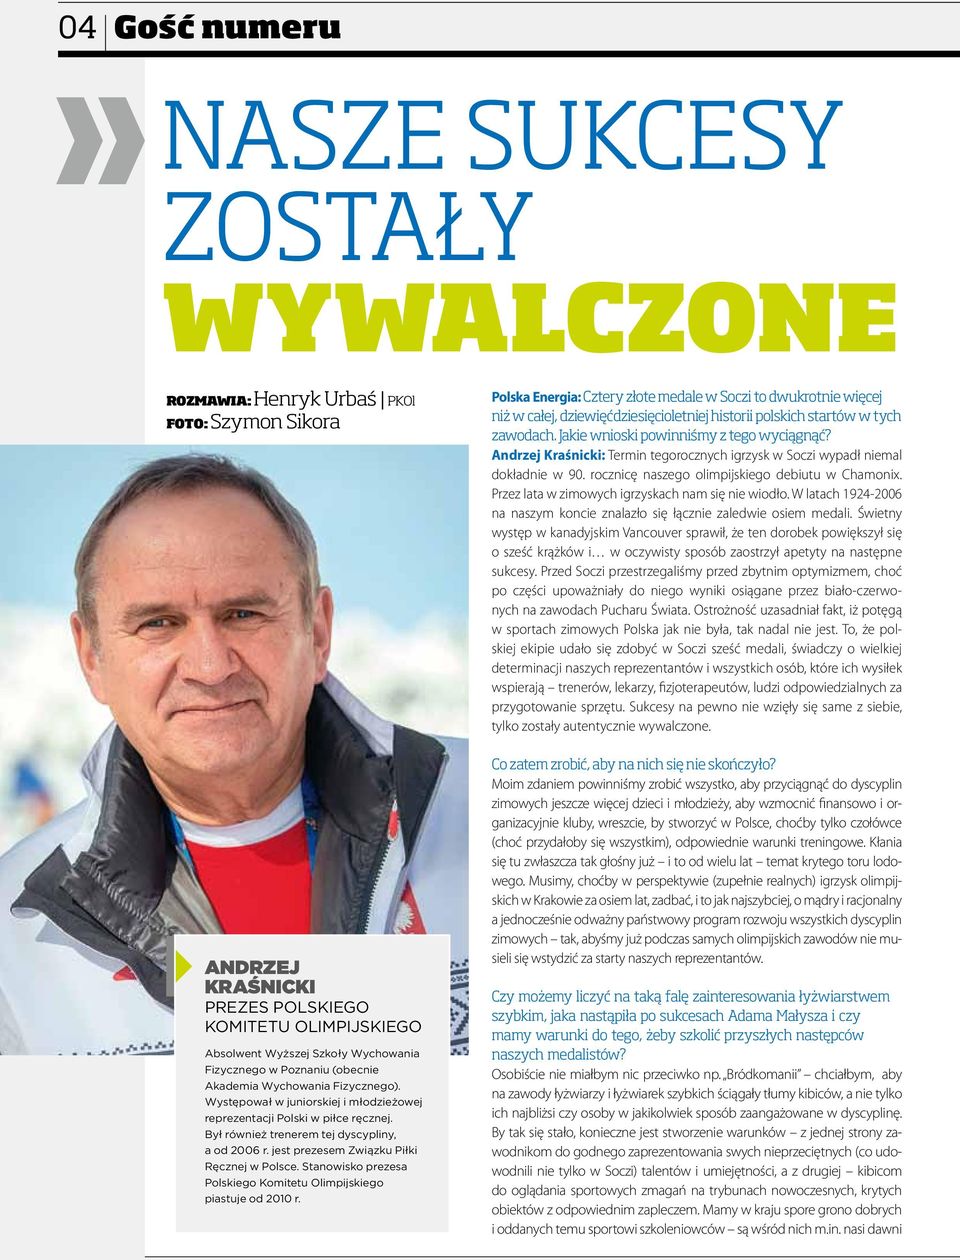 jest prezesem Związku Piłki Ręcznej w Polsce. Stanowisko prezesa Polskiego Komitetu Olimpijskiego piastuje od 2010 r.